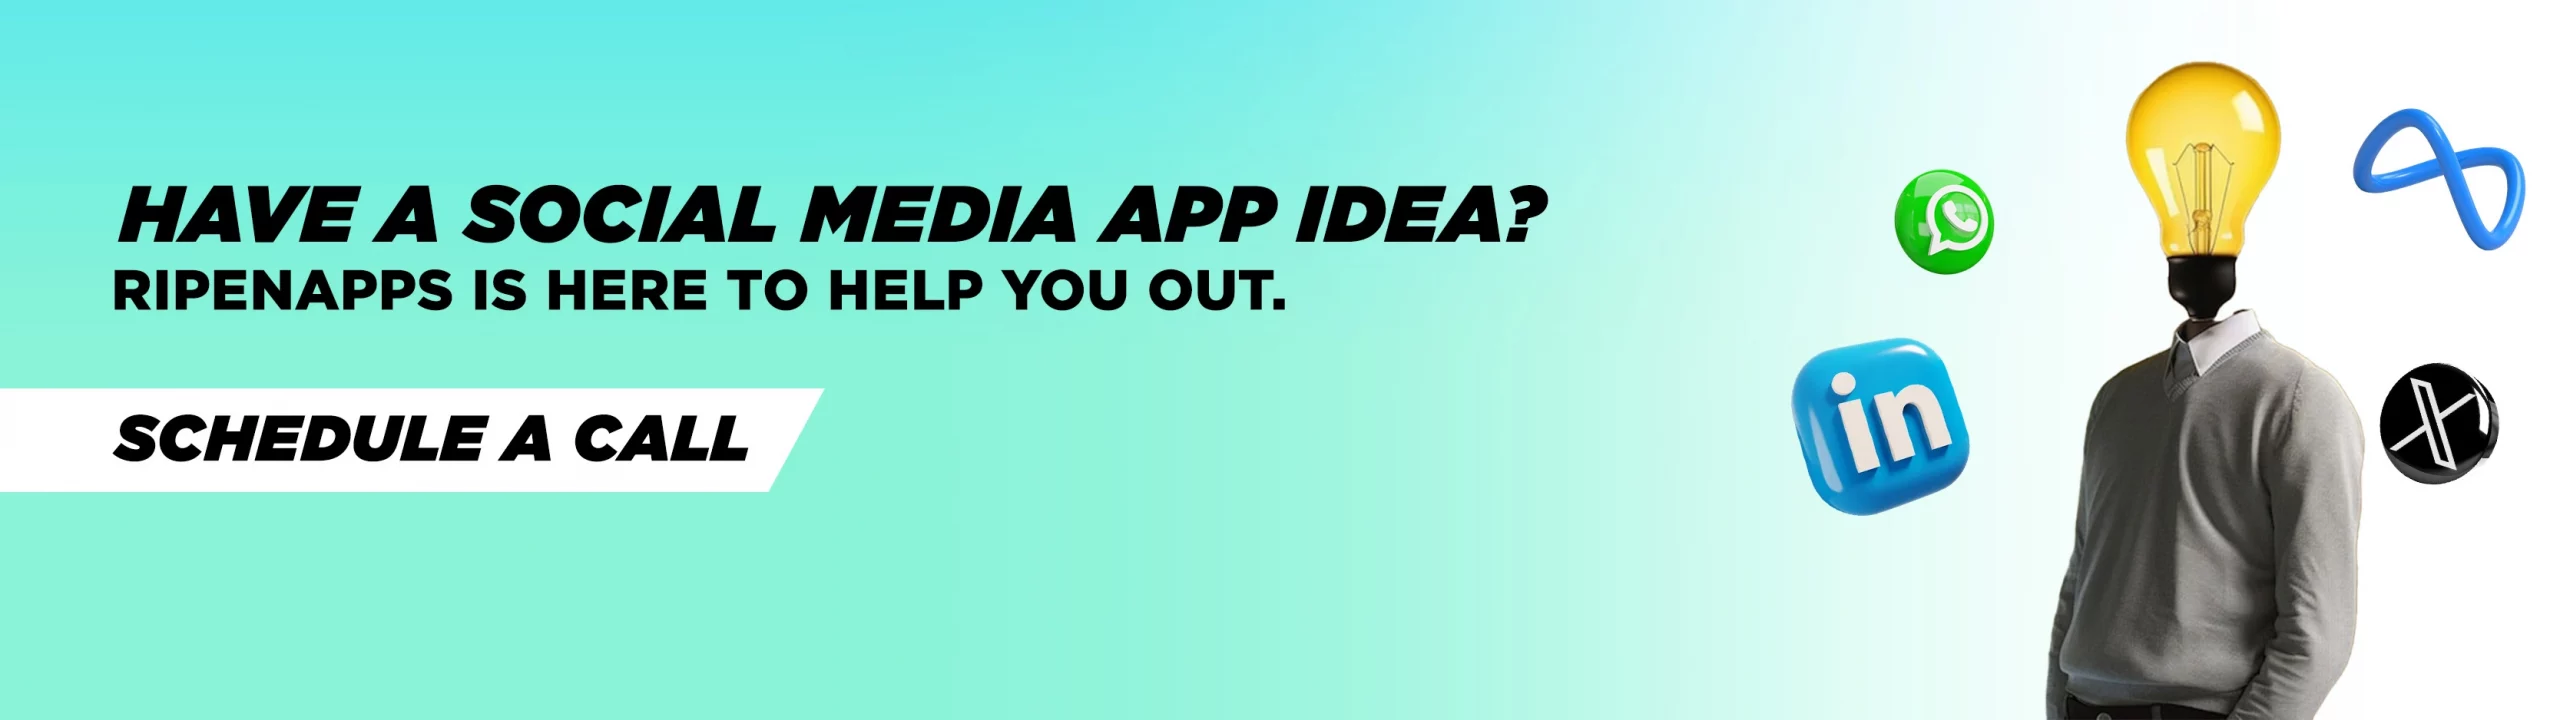 social media app idea